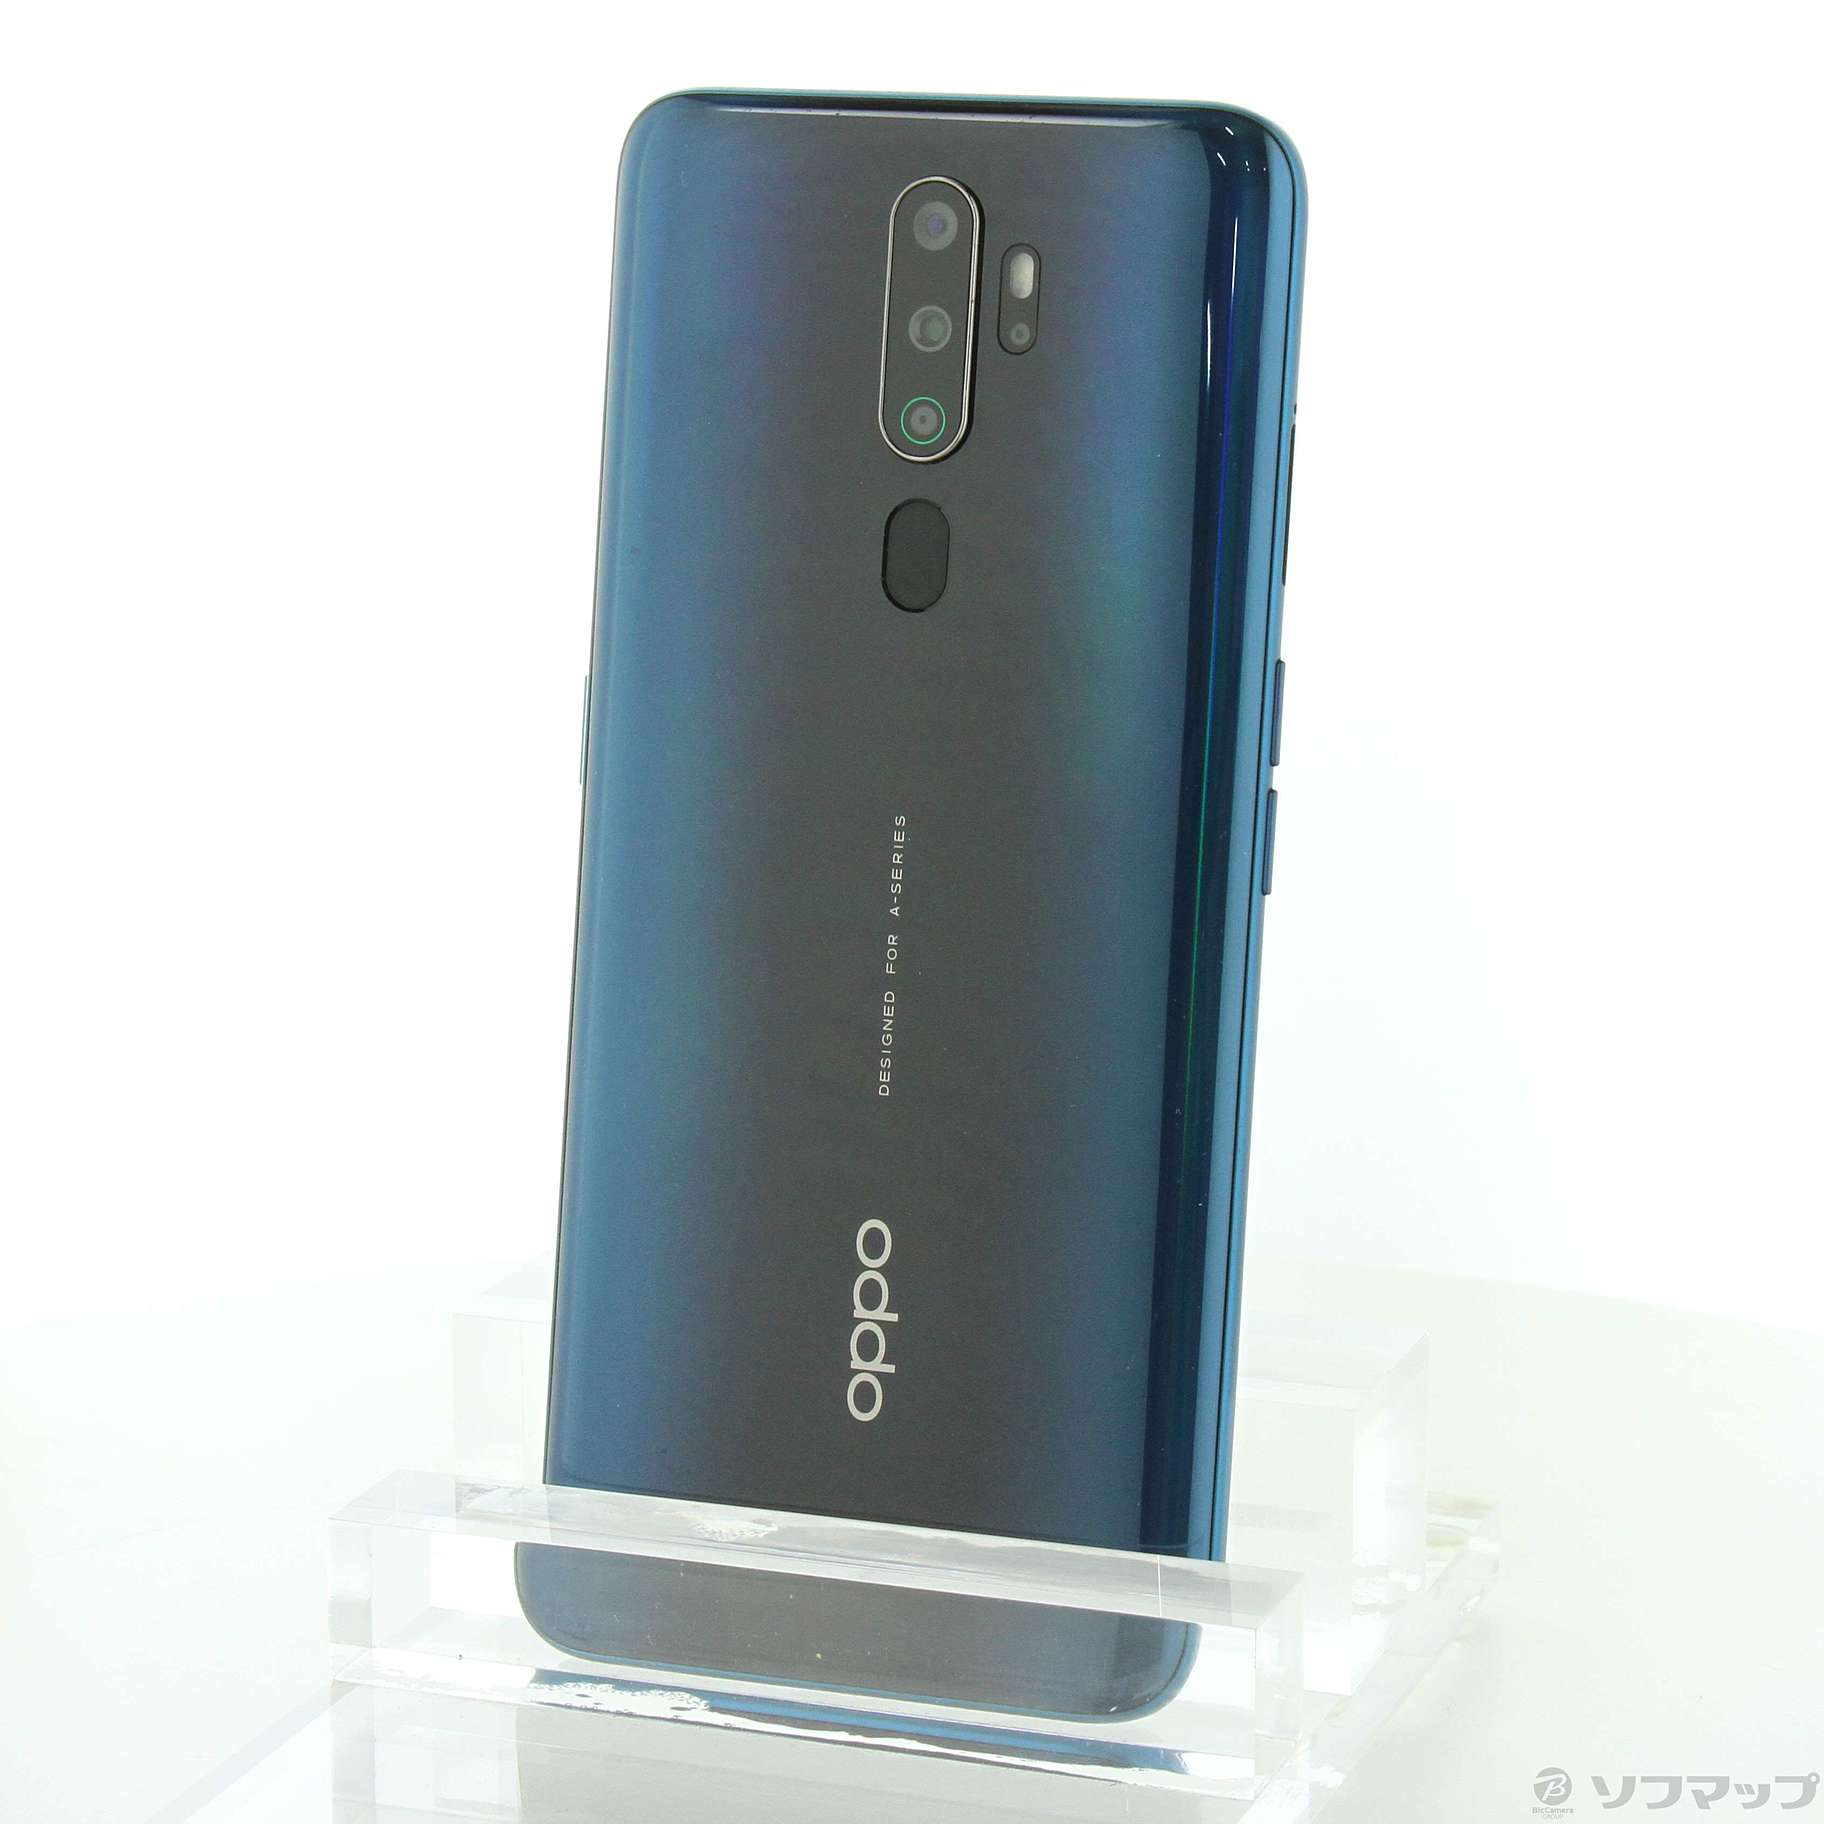 オッポ OPPO A5 2020 グリーン 64GB - スマートフォン本体